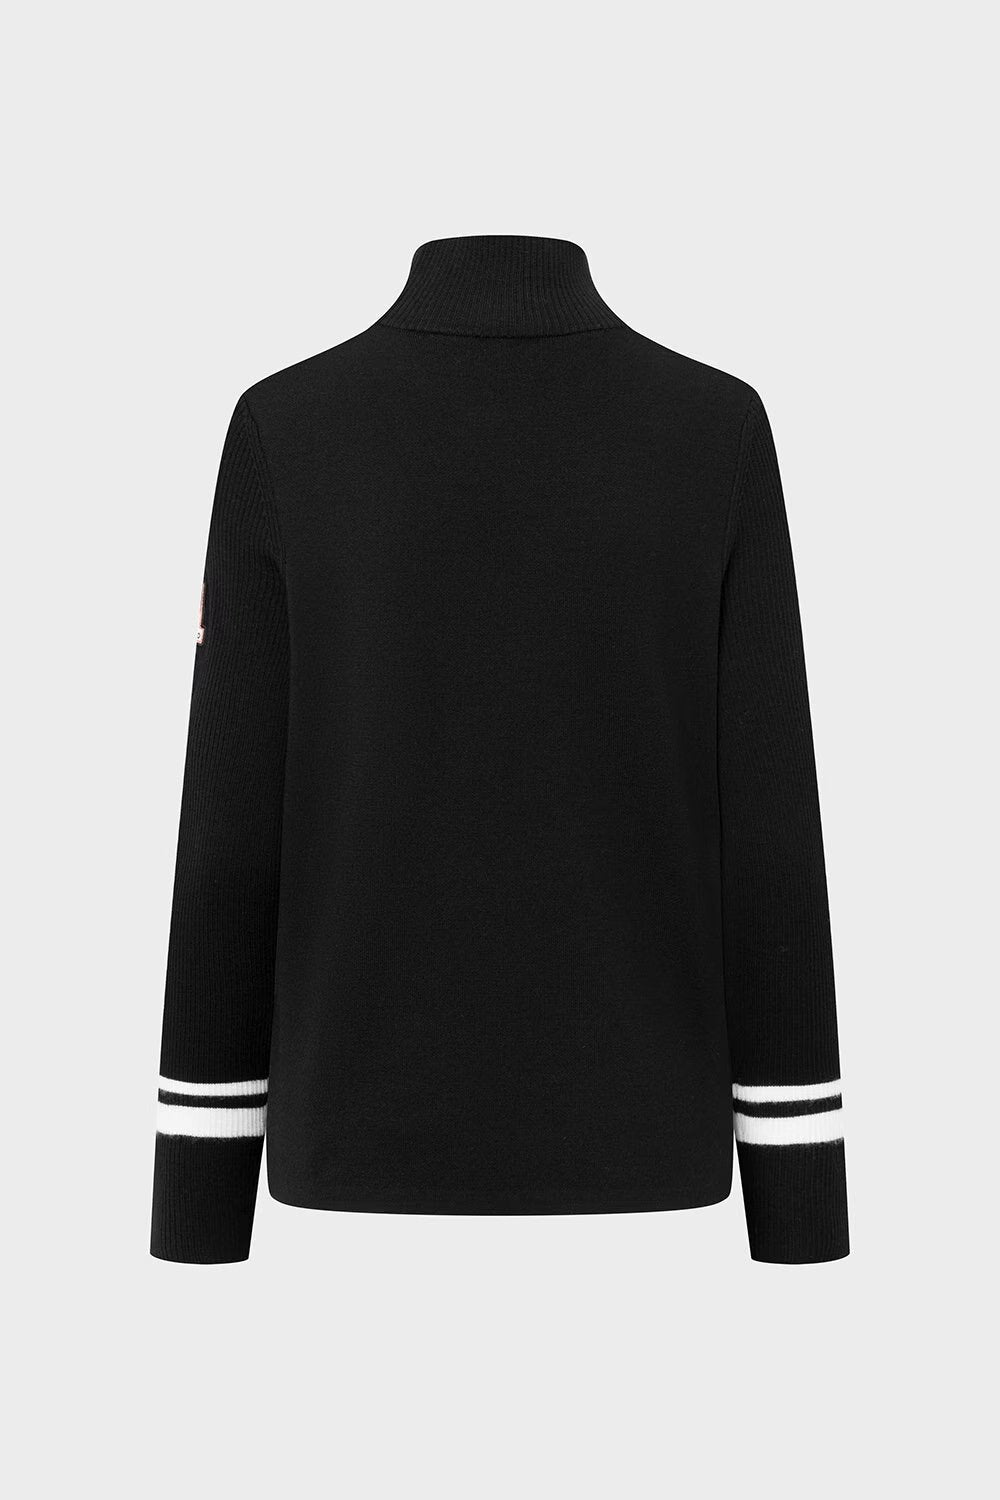 Cortina Sweater Black | Genser | Smuk - Dameklær på nett